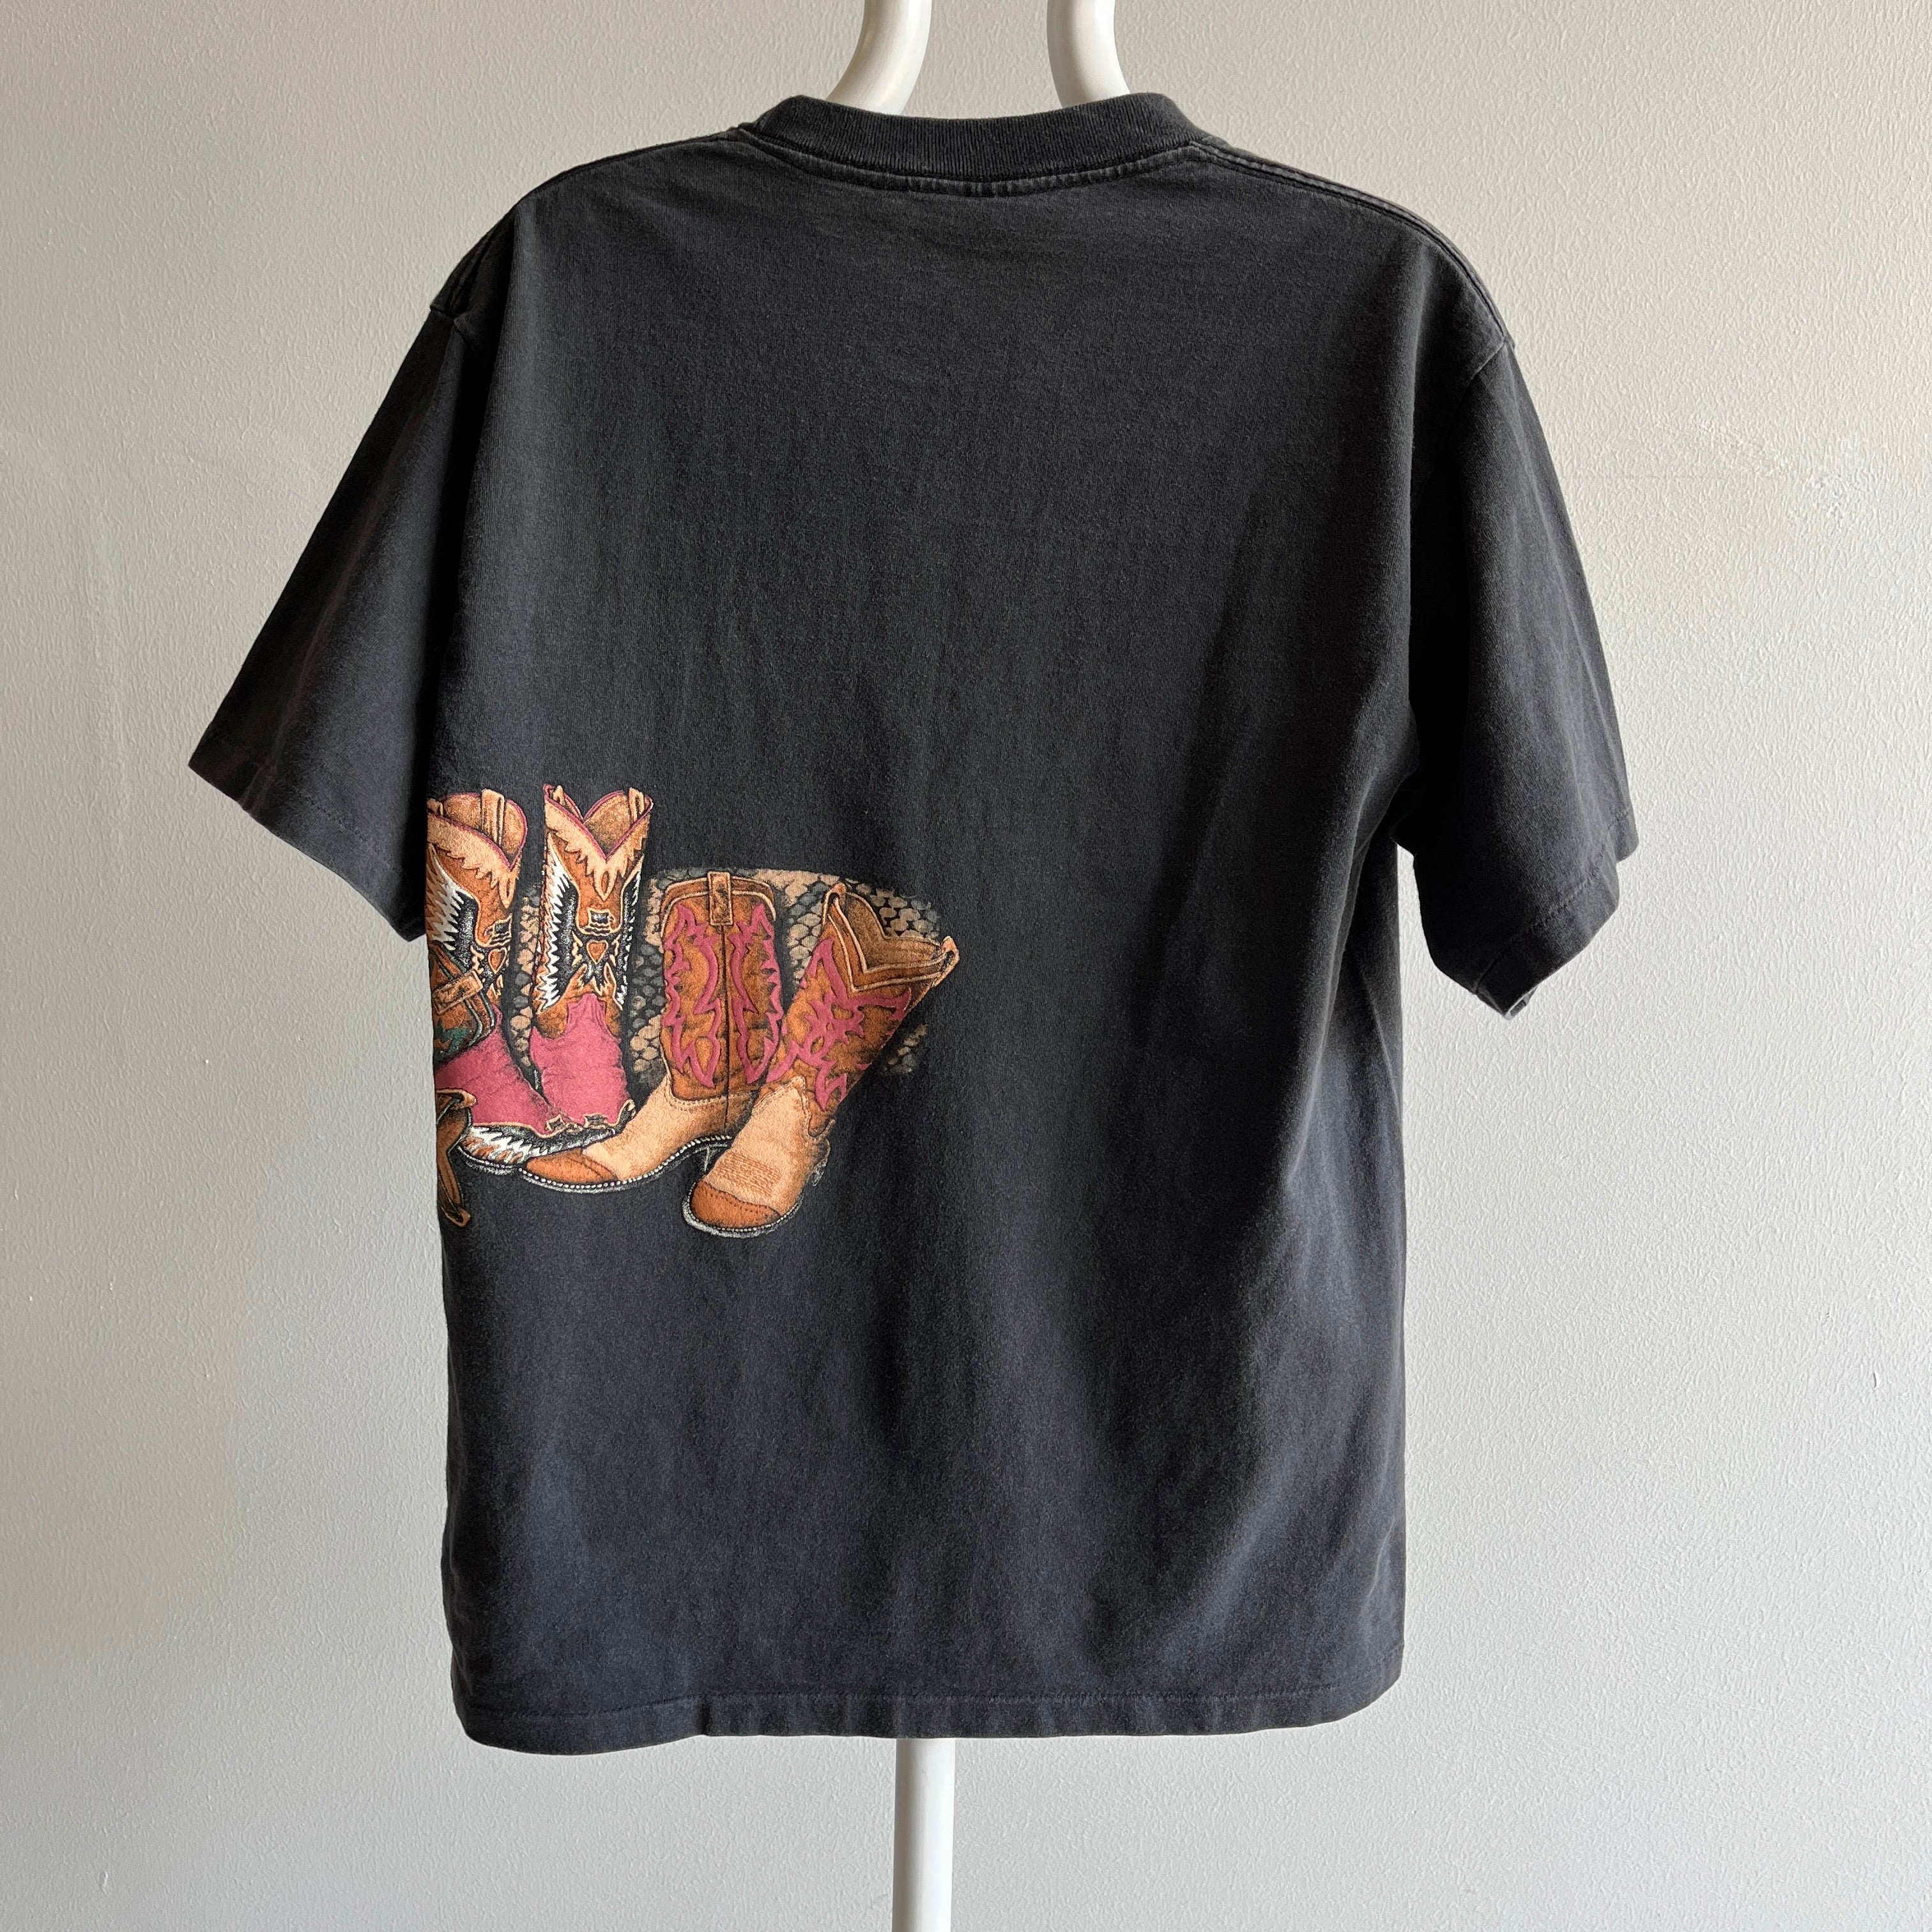 T-shirt enveloppant botte de cowboy des années 1990